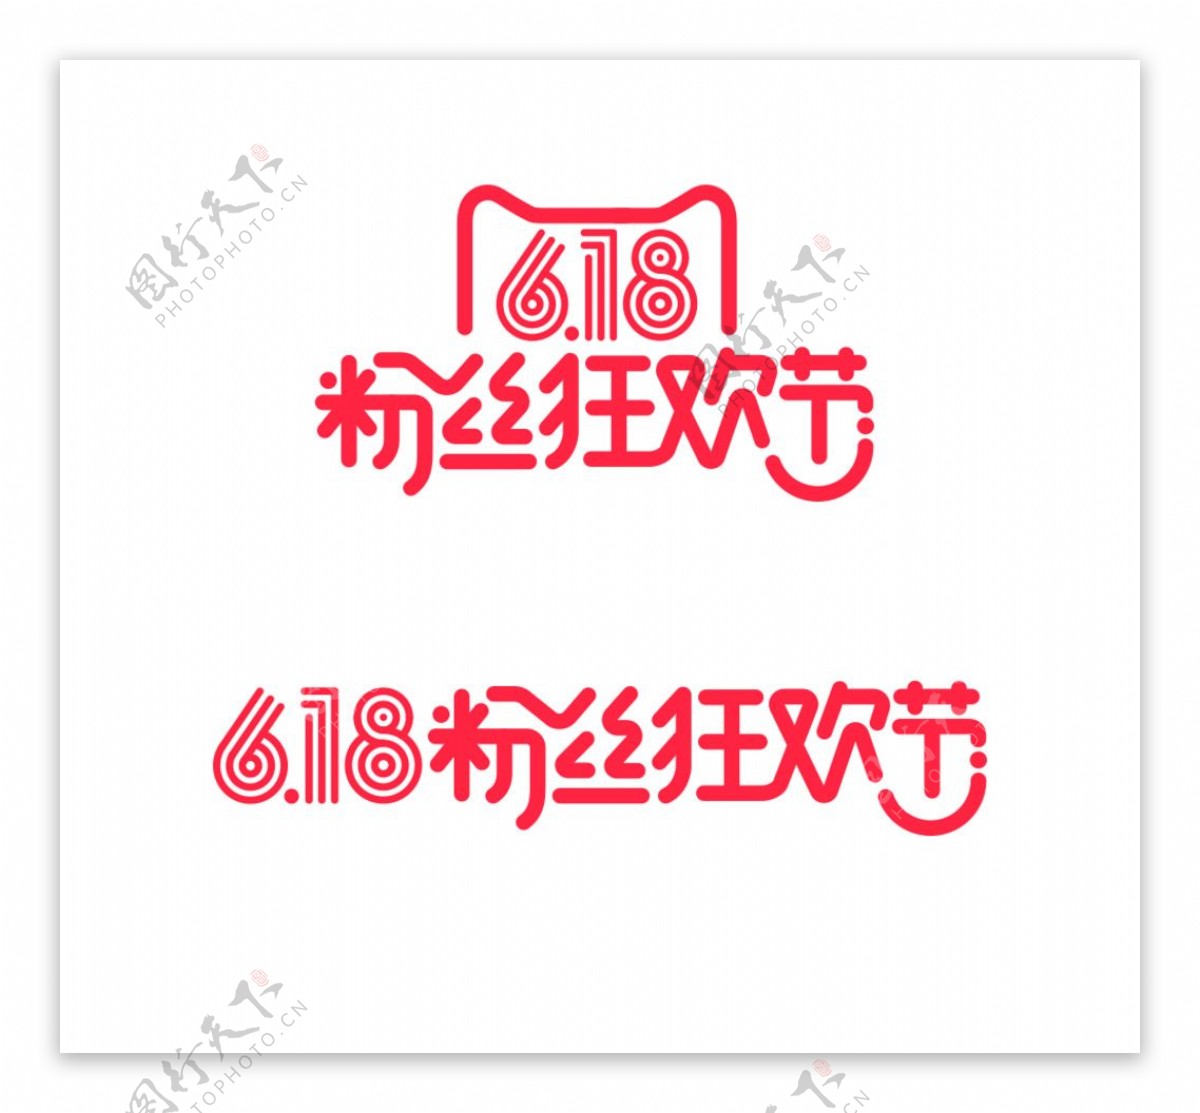 2016天猫粉丝节logo